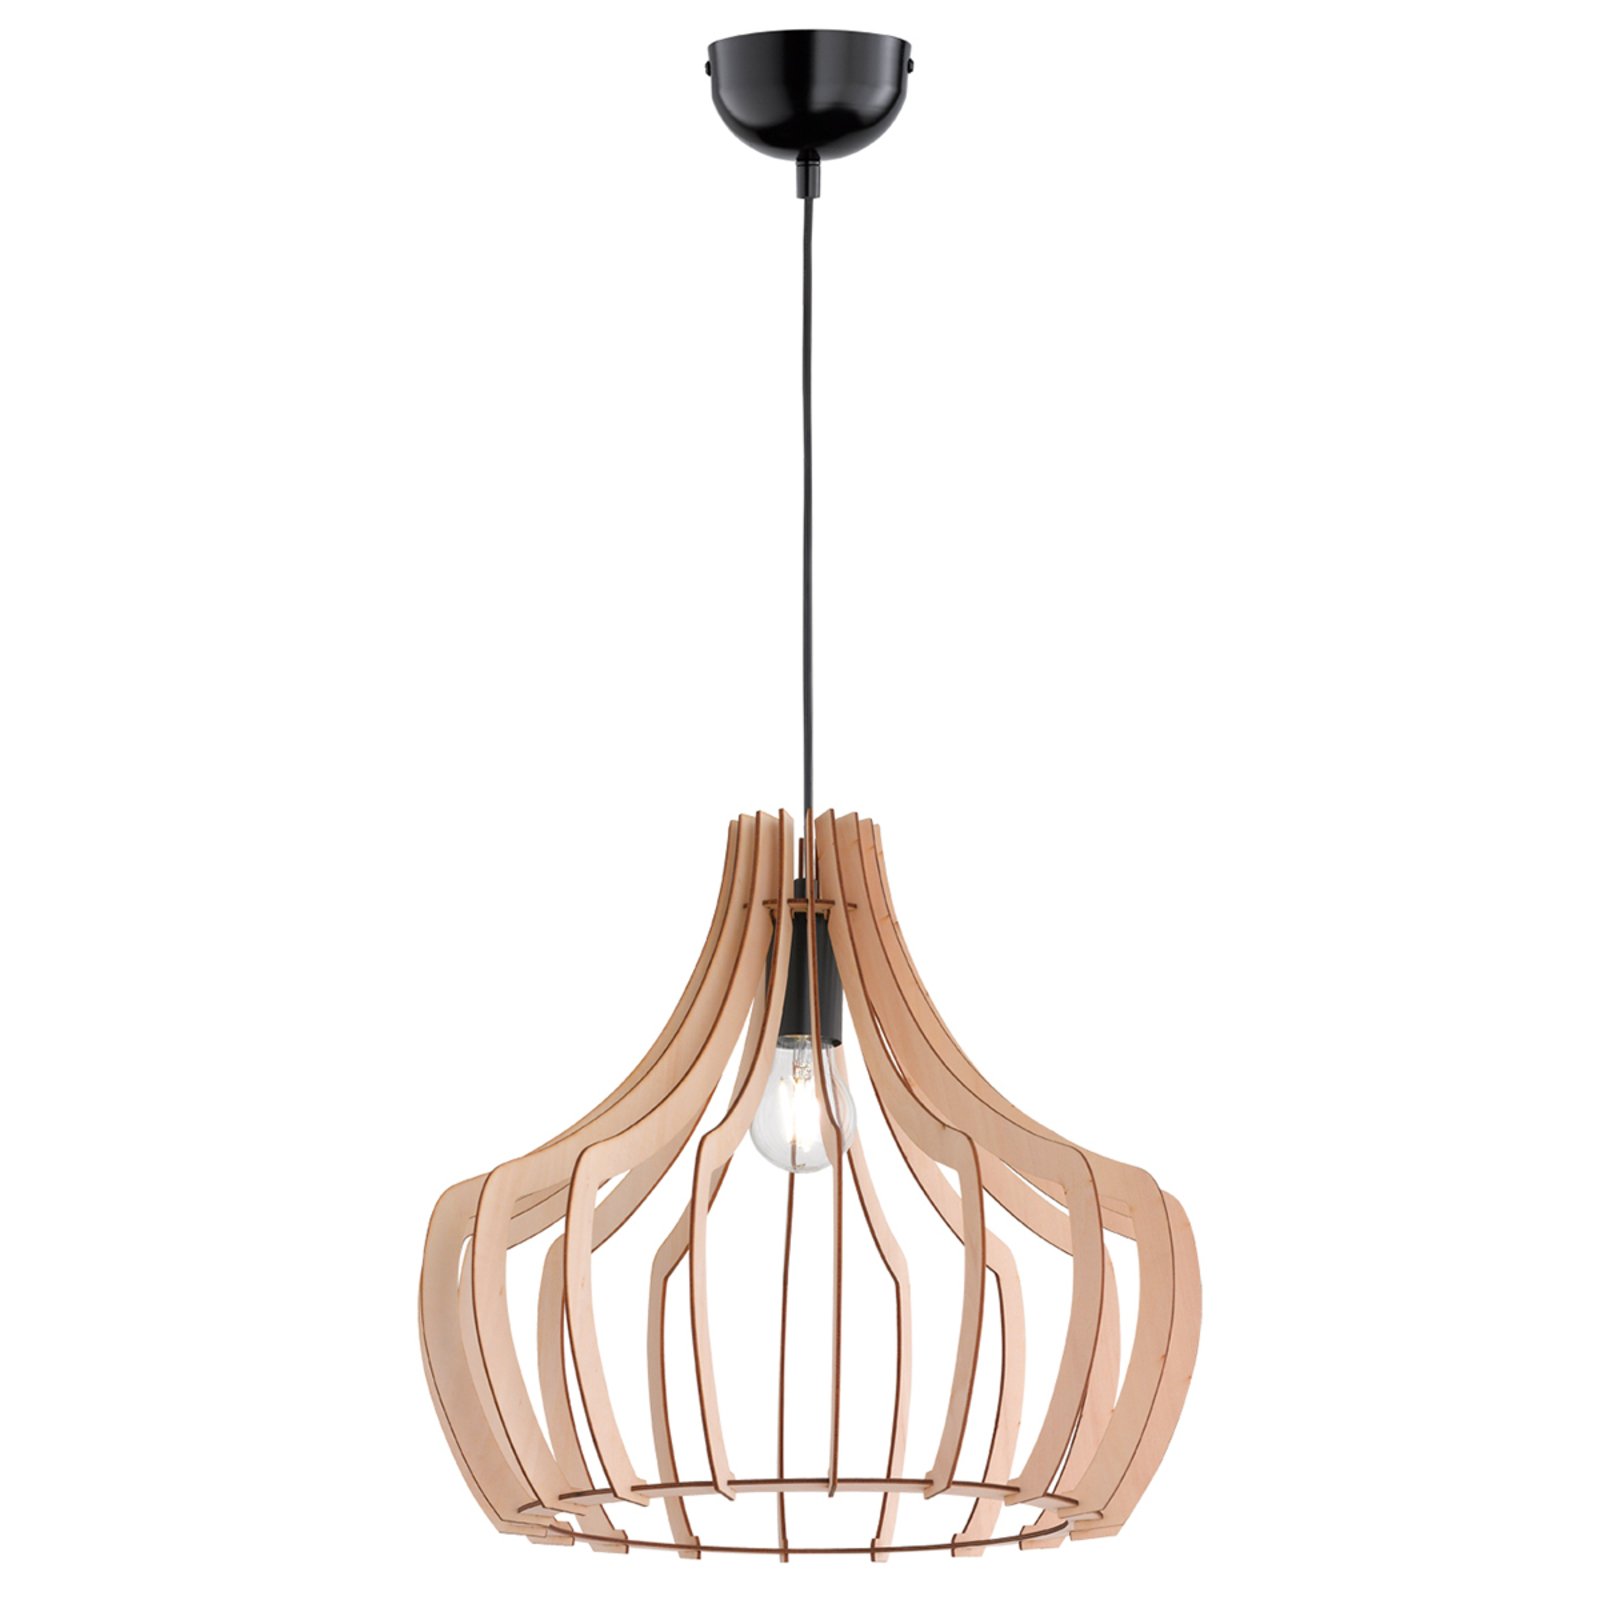 Wood - houten hanglamp in lamellen ontwerp